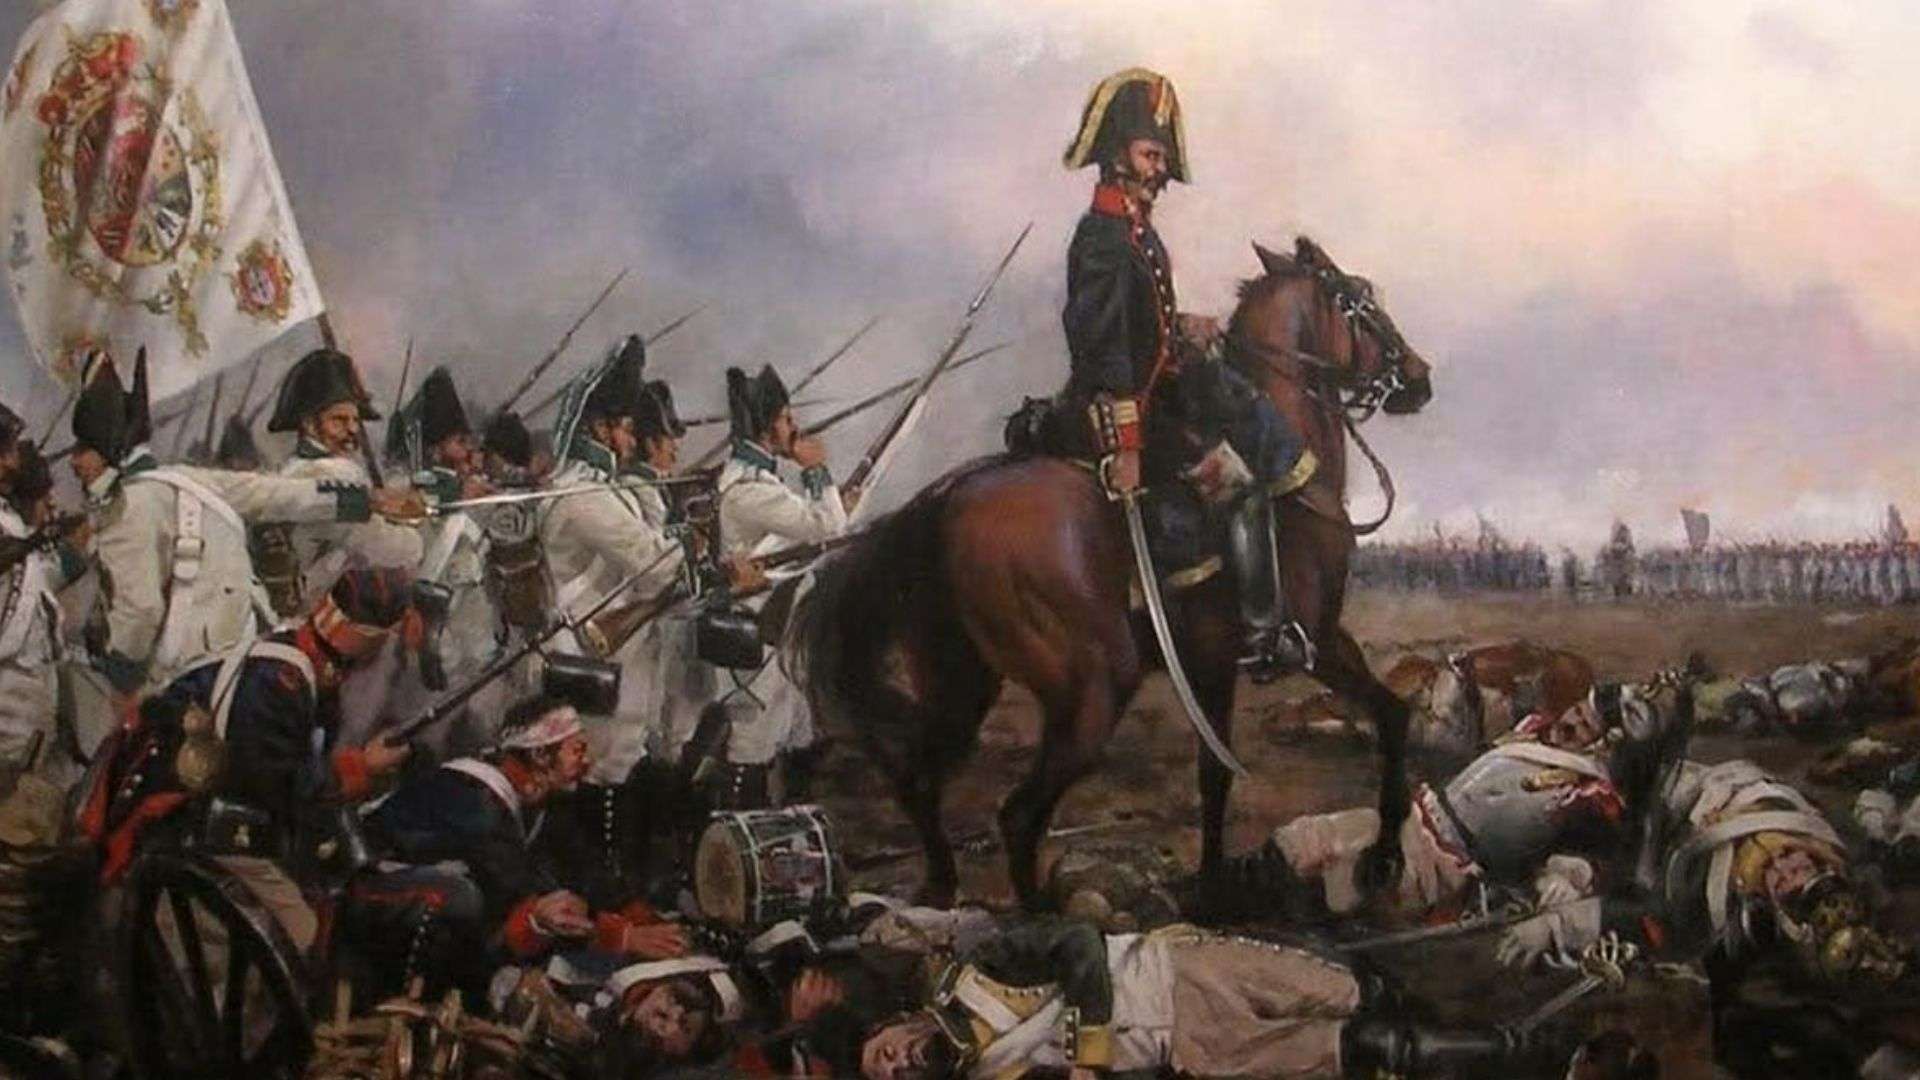 La batalla de Arapiles, el enfrentamiento de la Guerra de Independencia con mayor número de efectivos. Obra de Augusto Ferrer-Dalmau